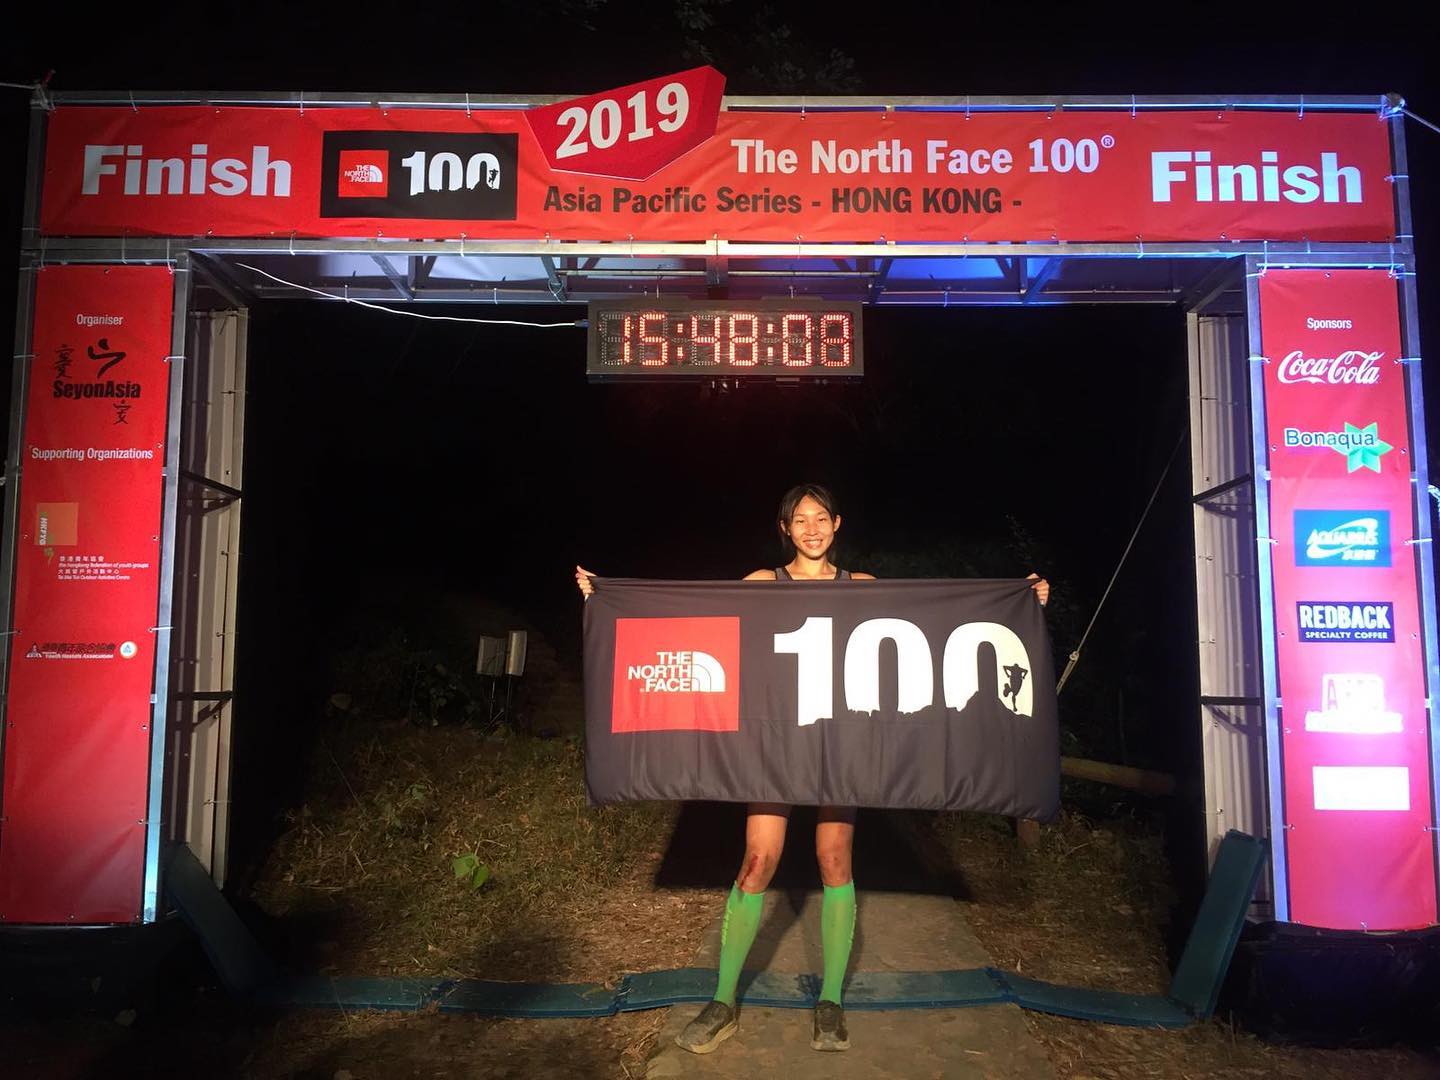 【FINISH終點直擊】經歷跨過日與夜的比賽，恭喜Cheung Man Yee 成為女子組100公里組別冠軍！(Finish Time: 15:45:34 )